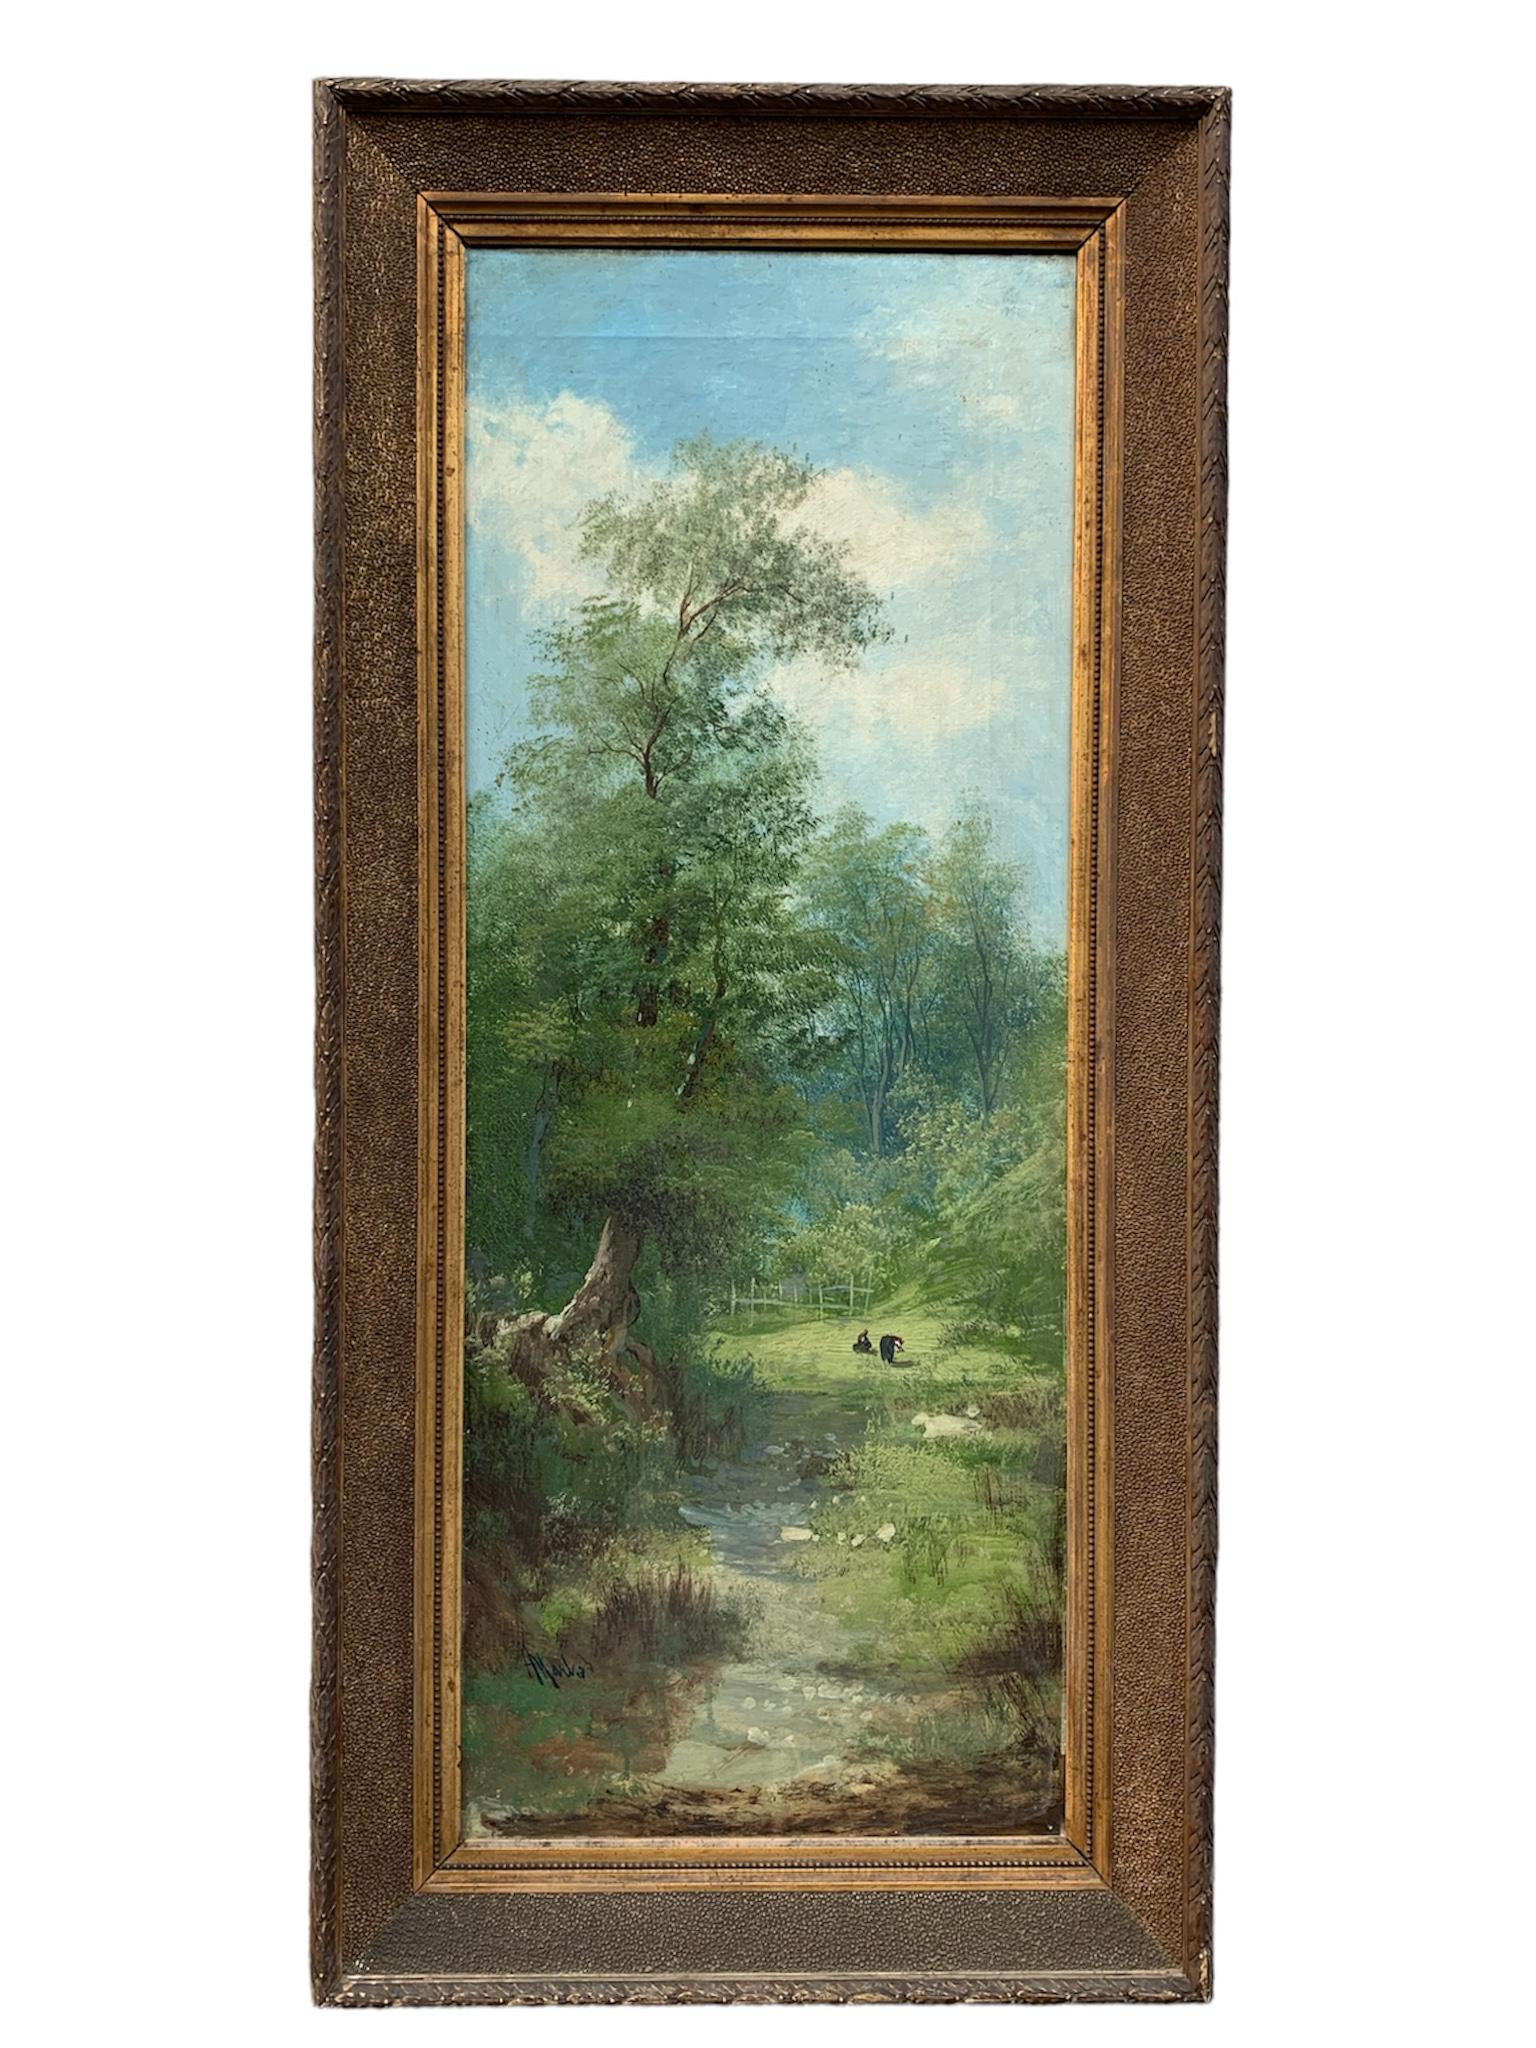 Ölgemälde auf Leinwand mit der Darstellung einer natürlichen Sommerlandschaft, geschaffen von Henry Markò zu Beginn des 20.

Ø cm 49 h cm 105

HENRY Markò, Nachkomme der österreichischen Malerdynastie von Andrea Markò, wurde 1855 in Florenz geboren.